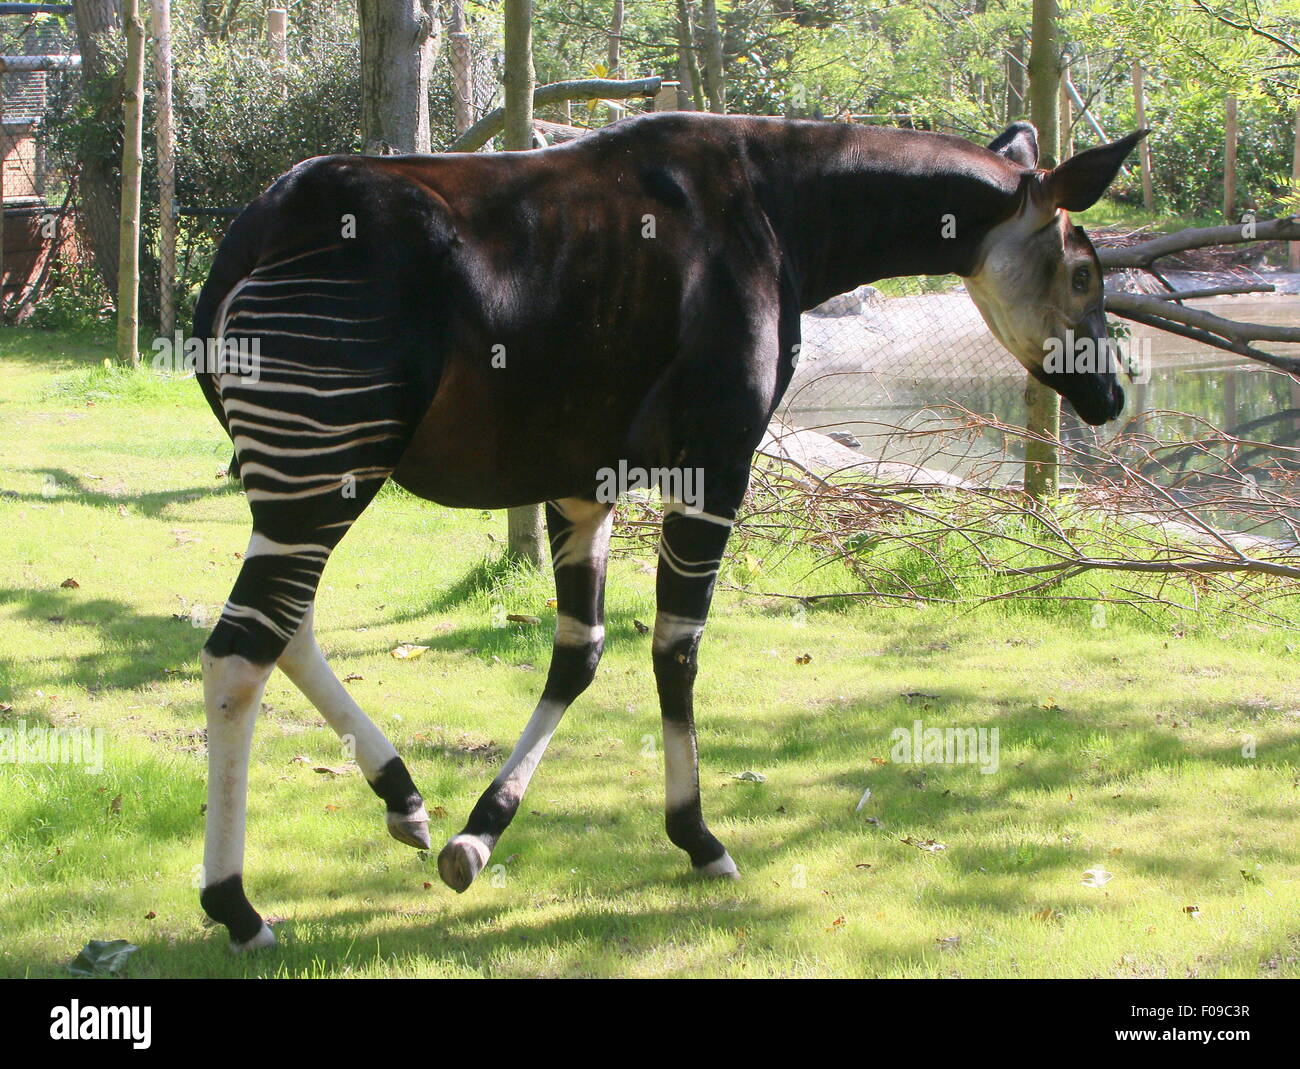 L'Afrique centrale Okapi (Okapia johnstoni) à l'enceinte en Zoo de Blijdorp de Rotterdam, Pays-Bas -clôtures et bâtiments visible Banque D'Images